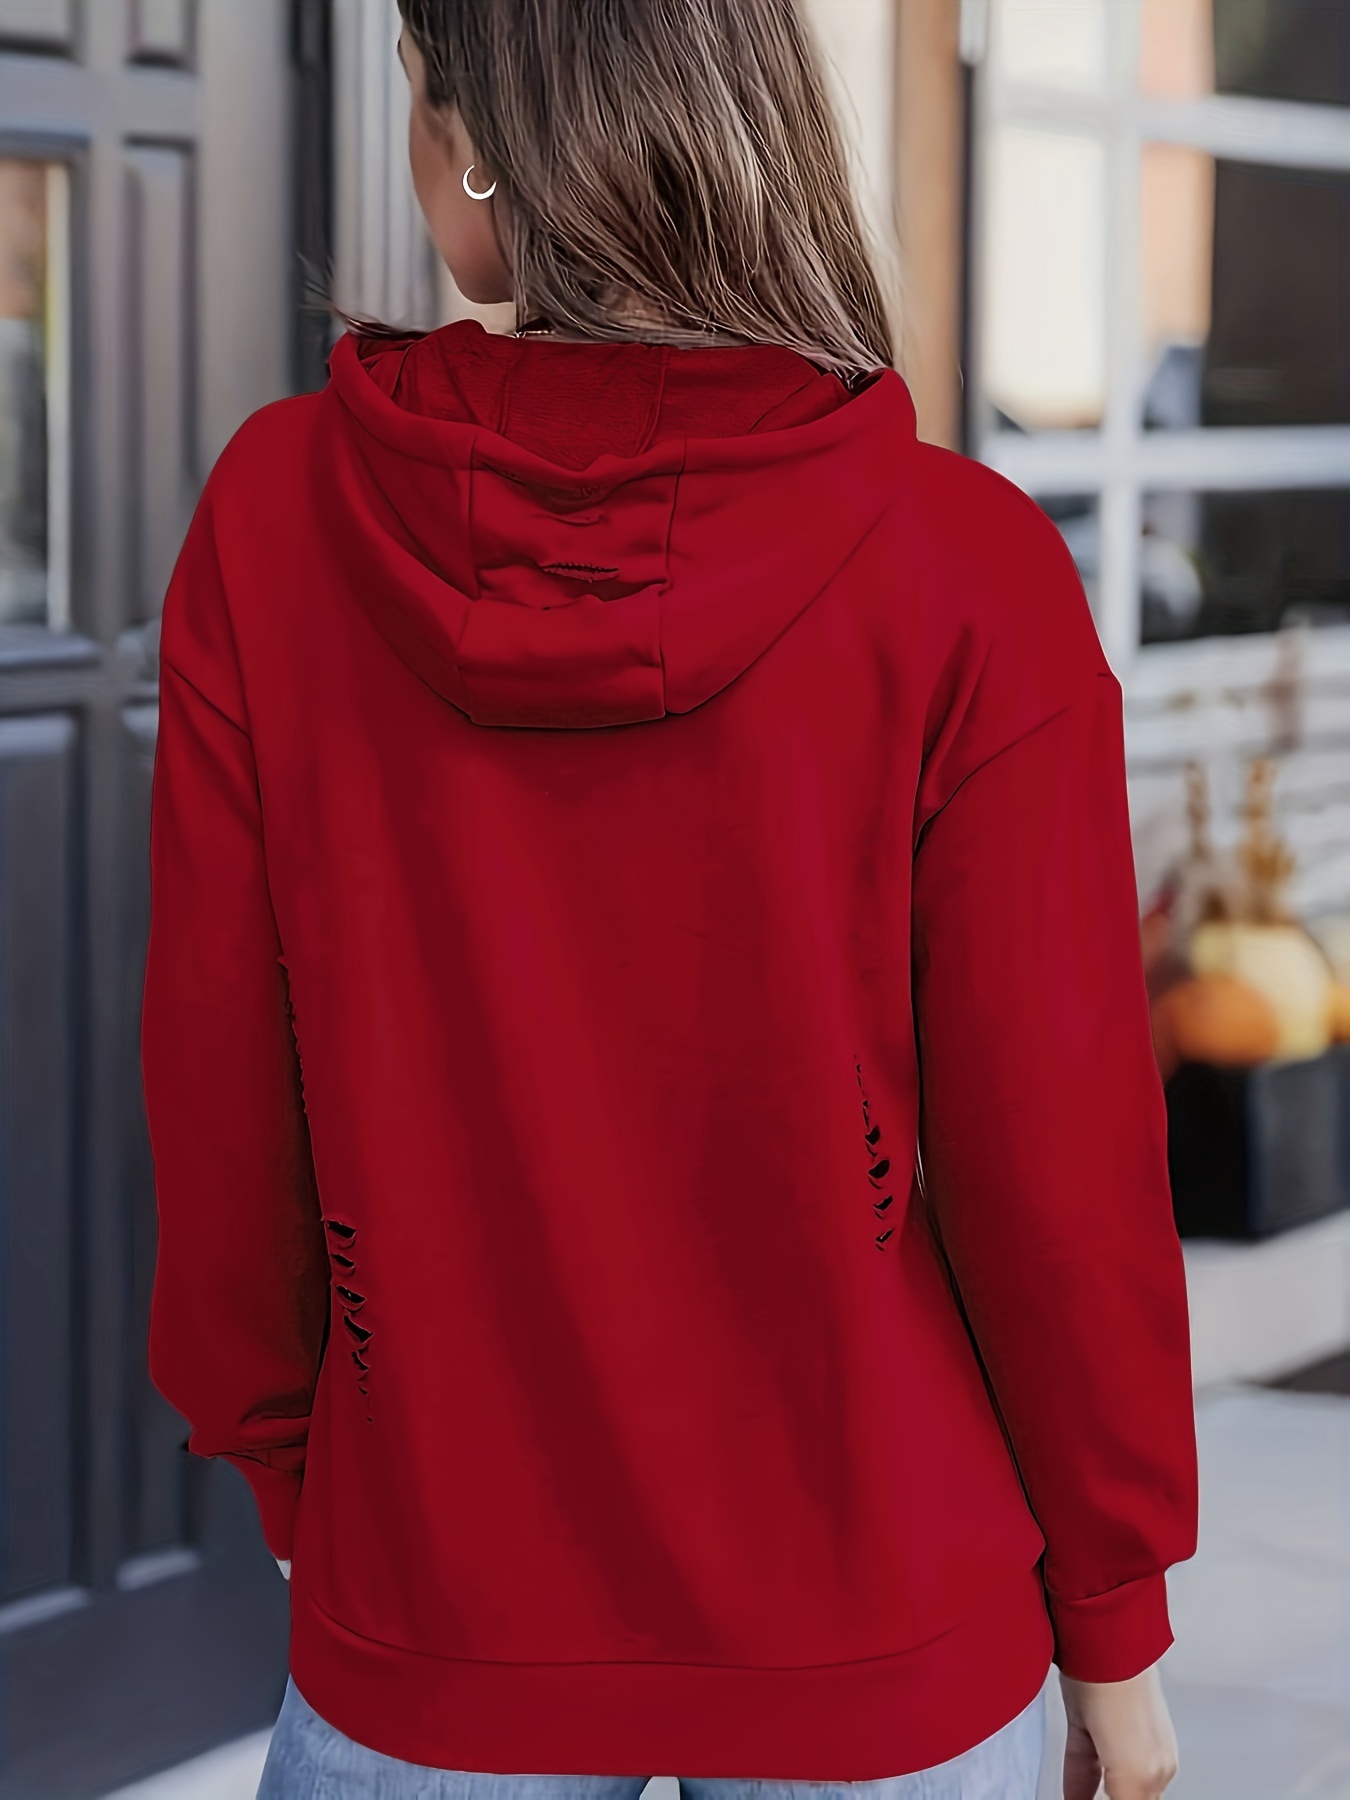 Red Sudadera con capucha de invierno para mujer, sudadera gruesa de felpa  de Color sólido con capucha que mantiene el calor, jersey con cordón,  sudadera informal con capucha de ot YONGSHENG 8390611731373